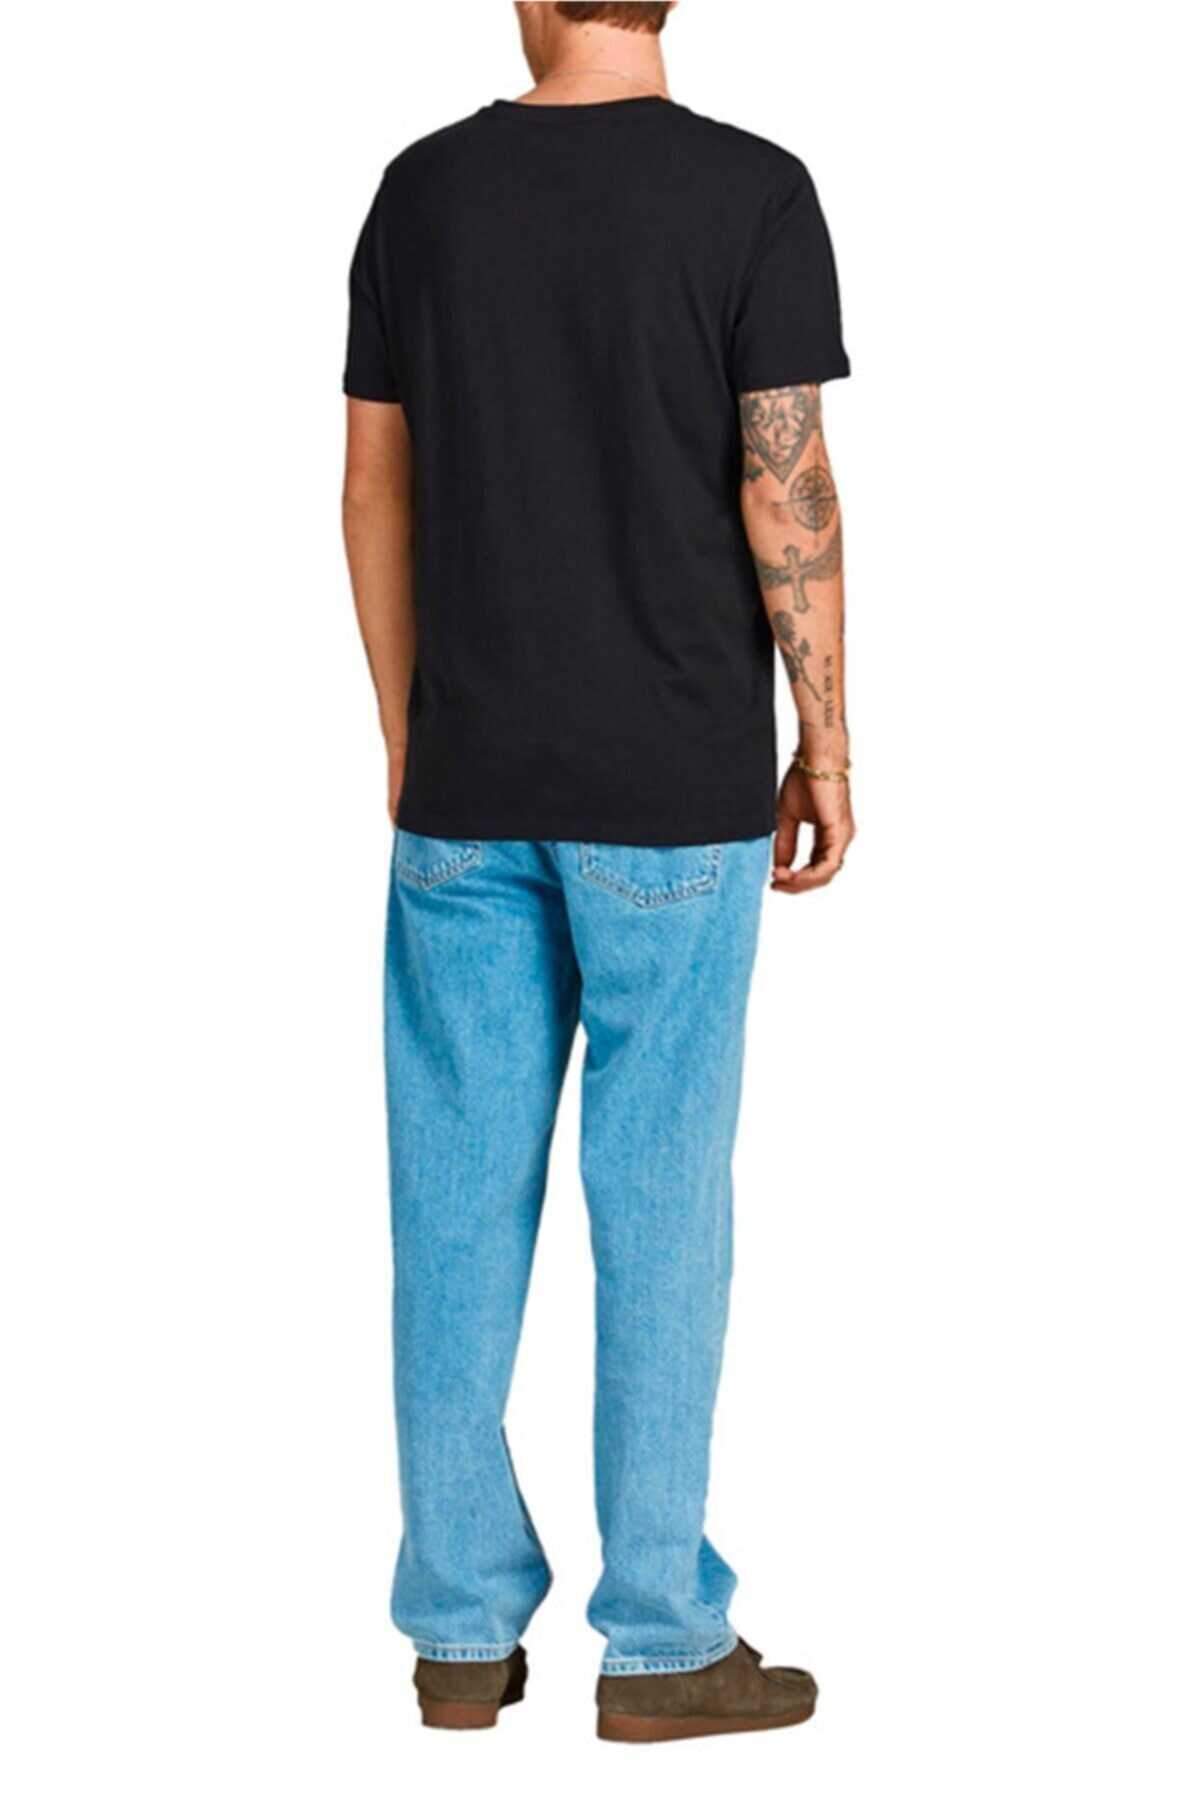 تیشرت یقه گرد چاپ دار مردانه مشکی برند Jack Jones 